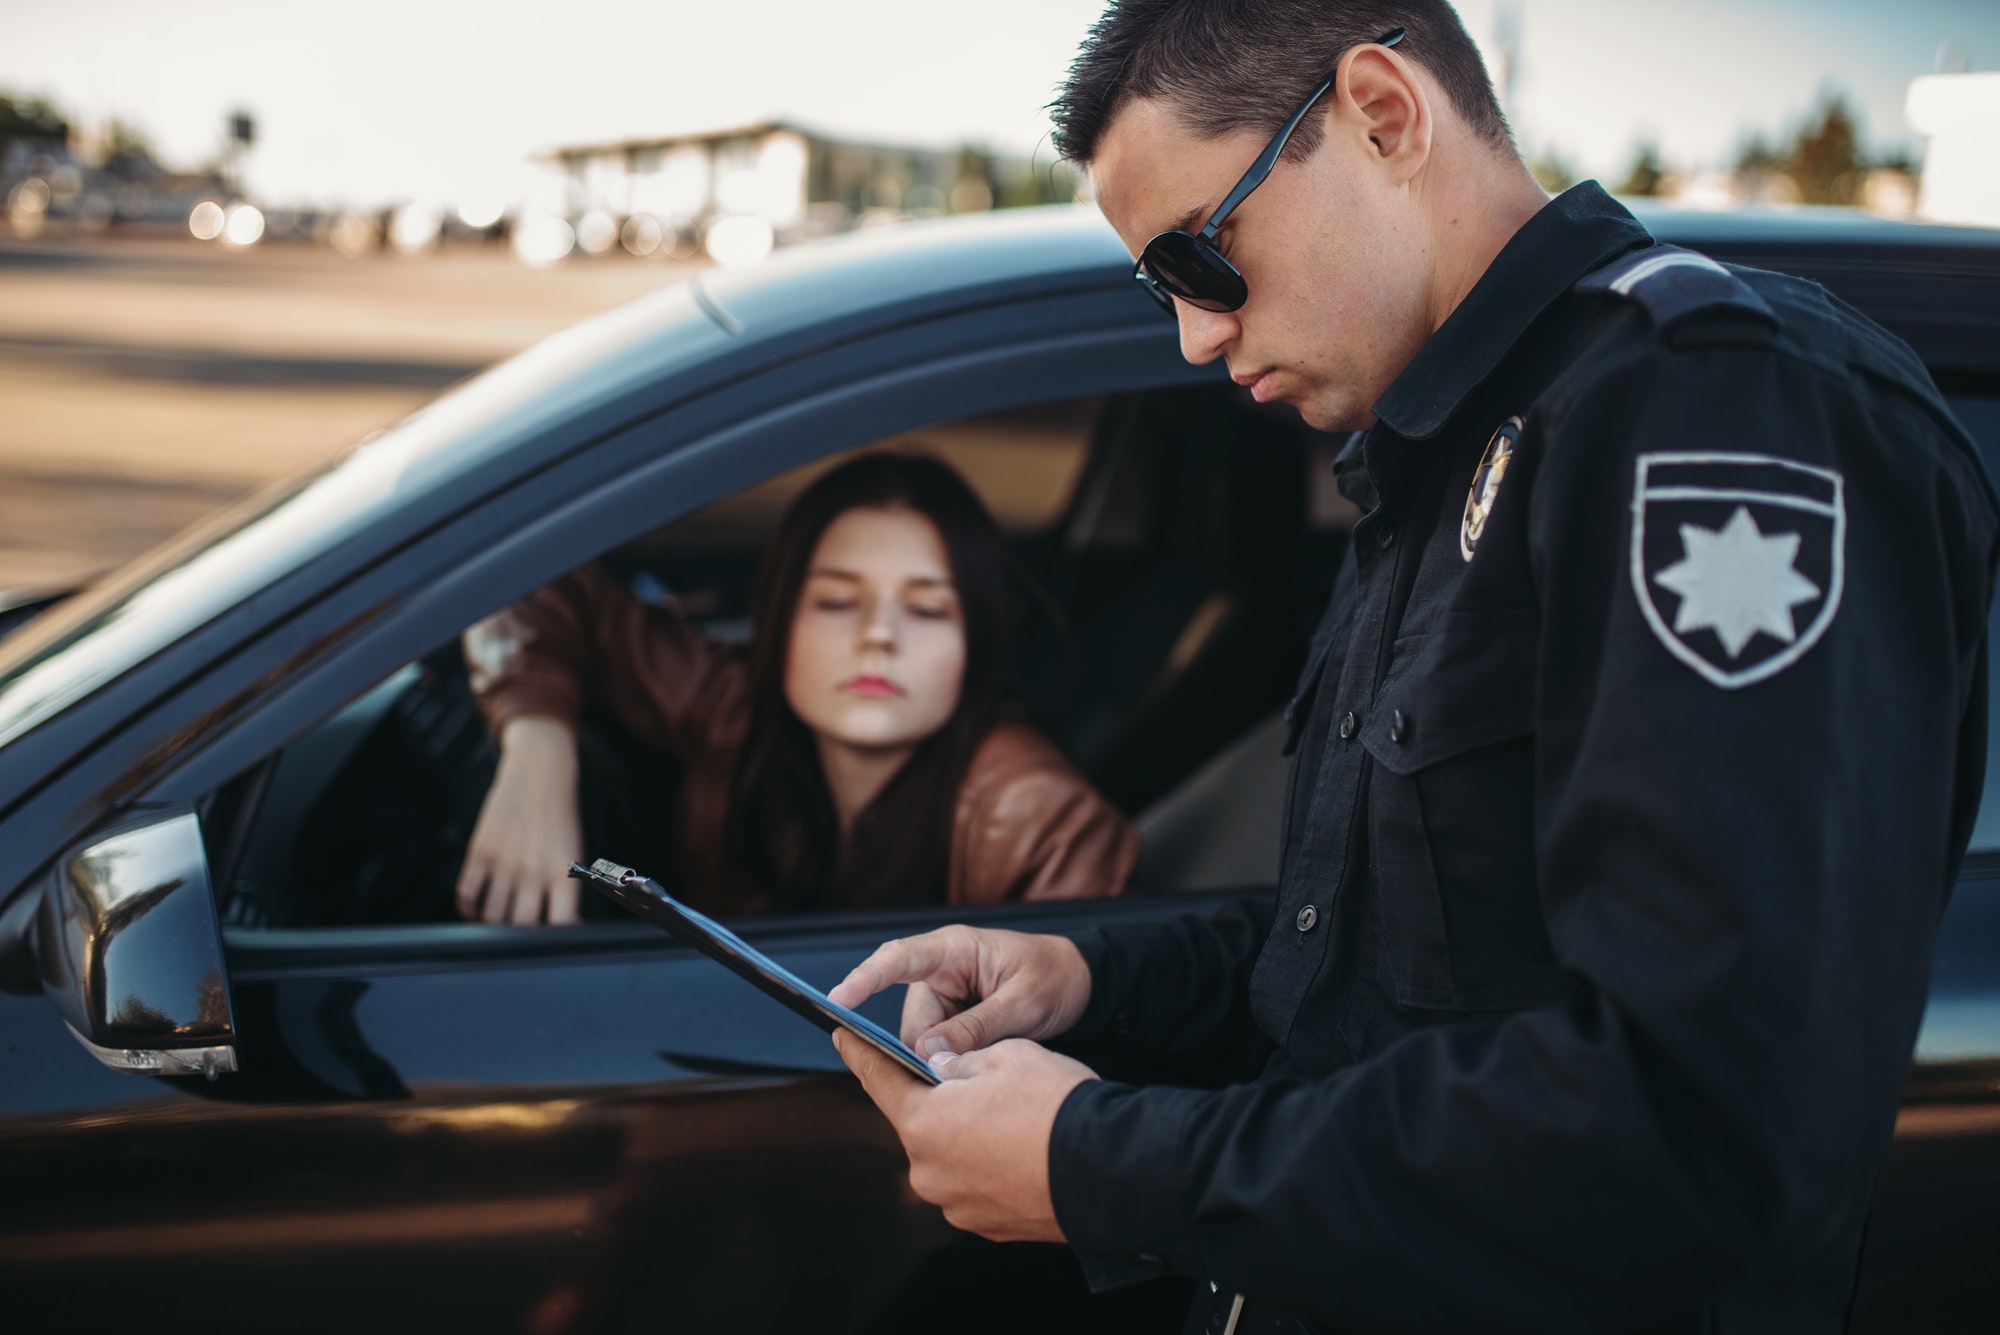 Cop in uniform checks license of female driver